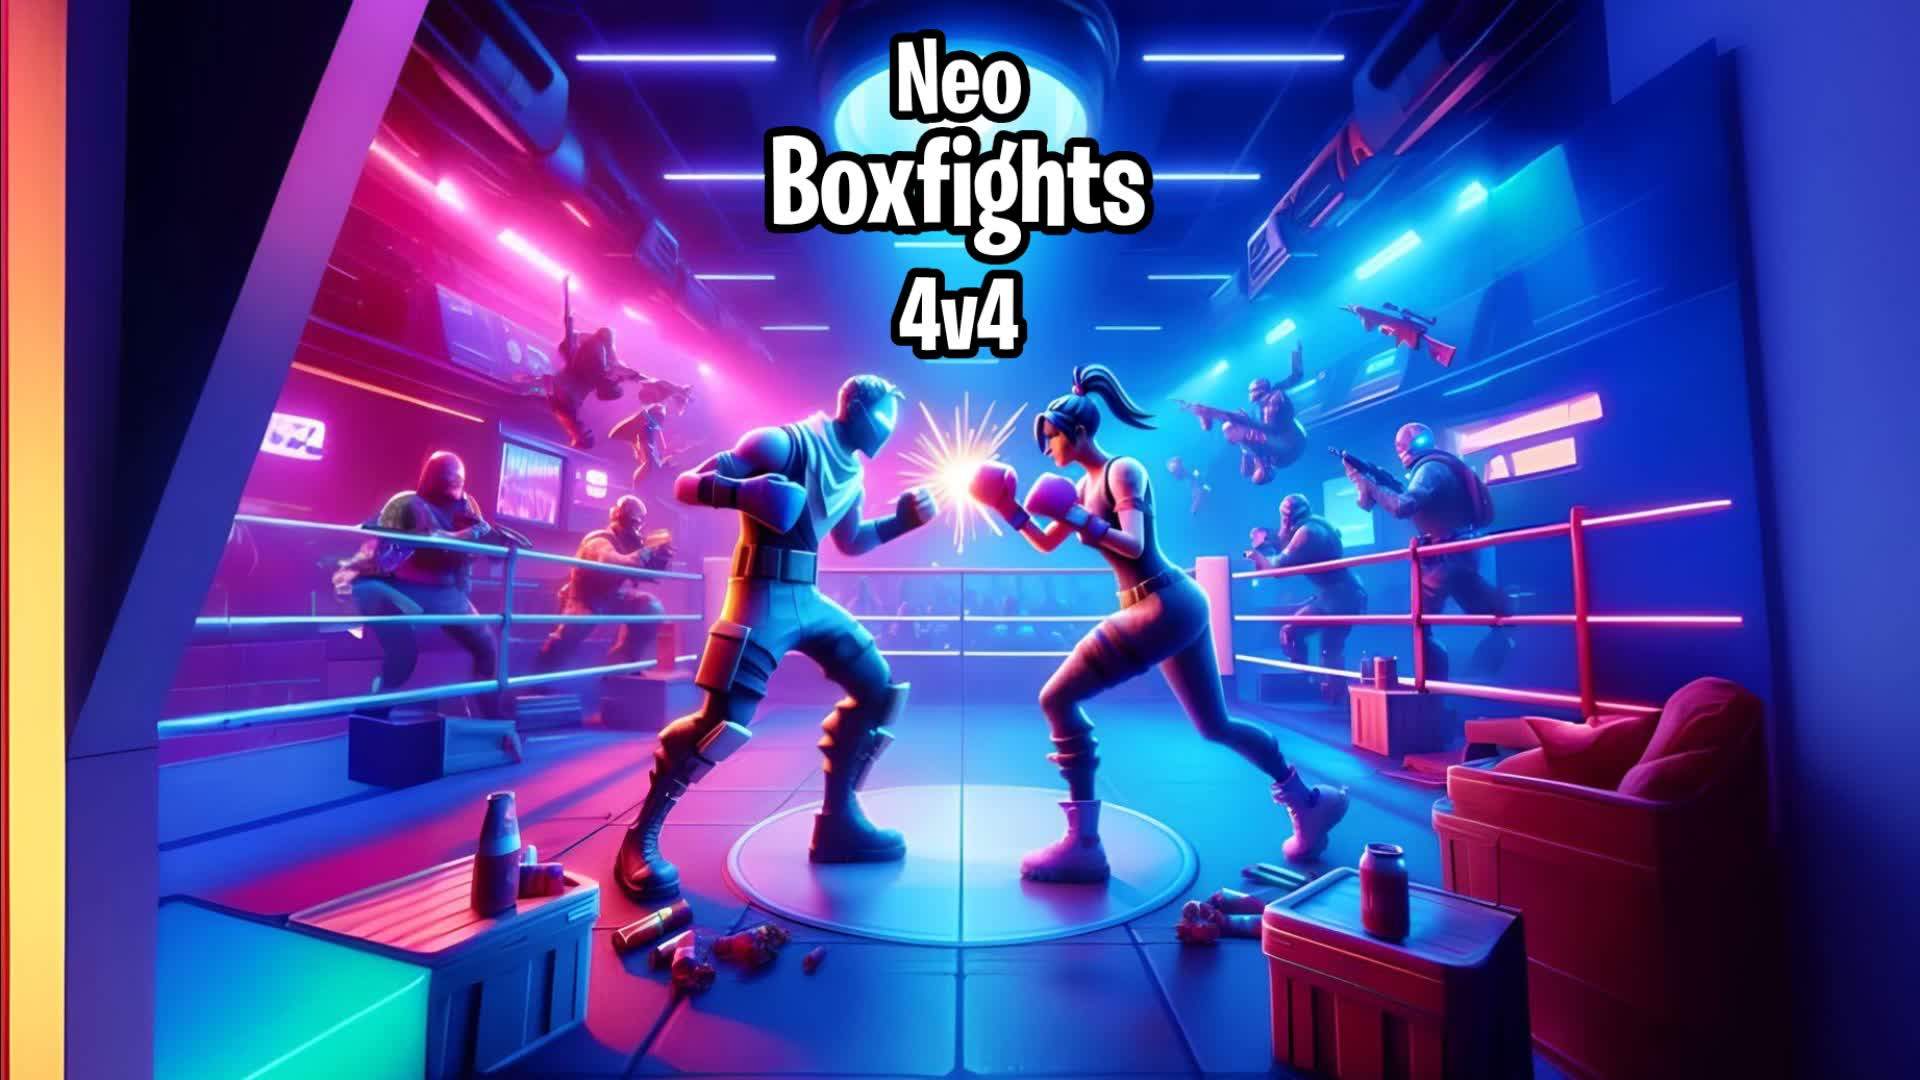 Neo 4v4 Boxfights